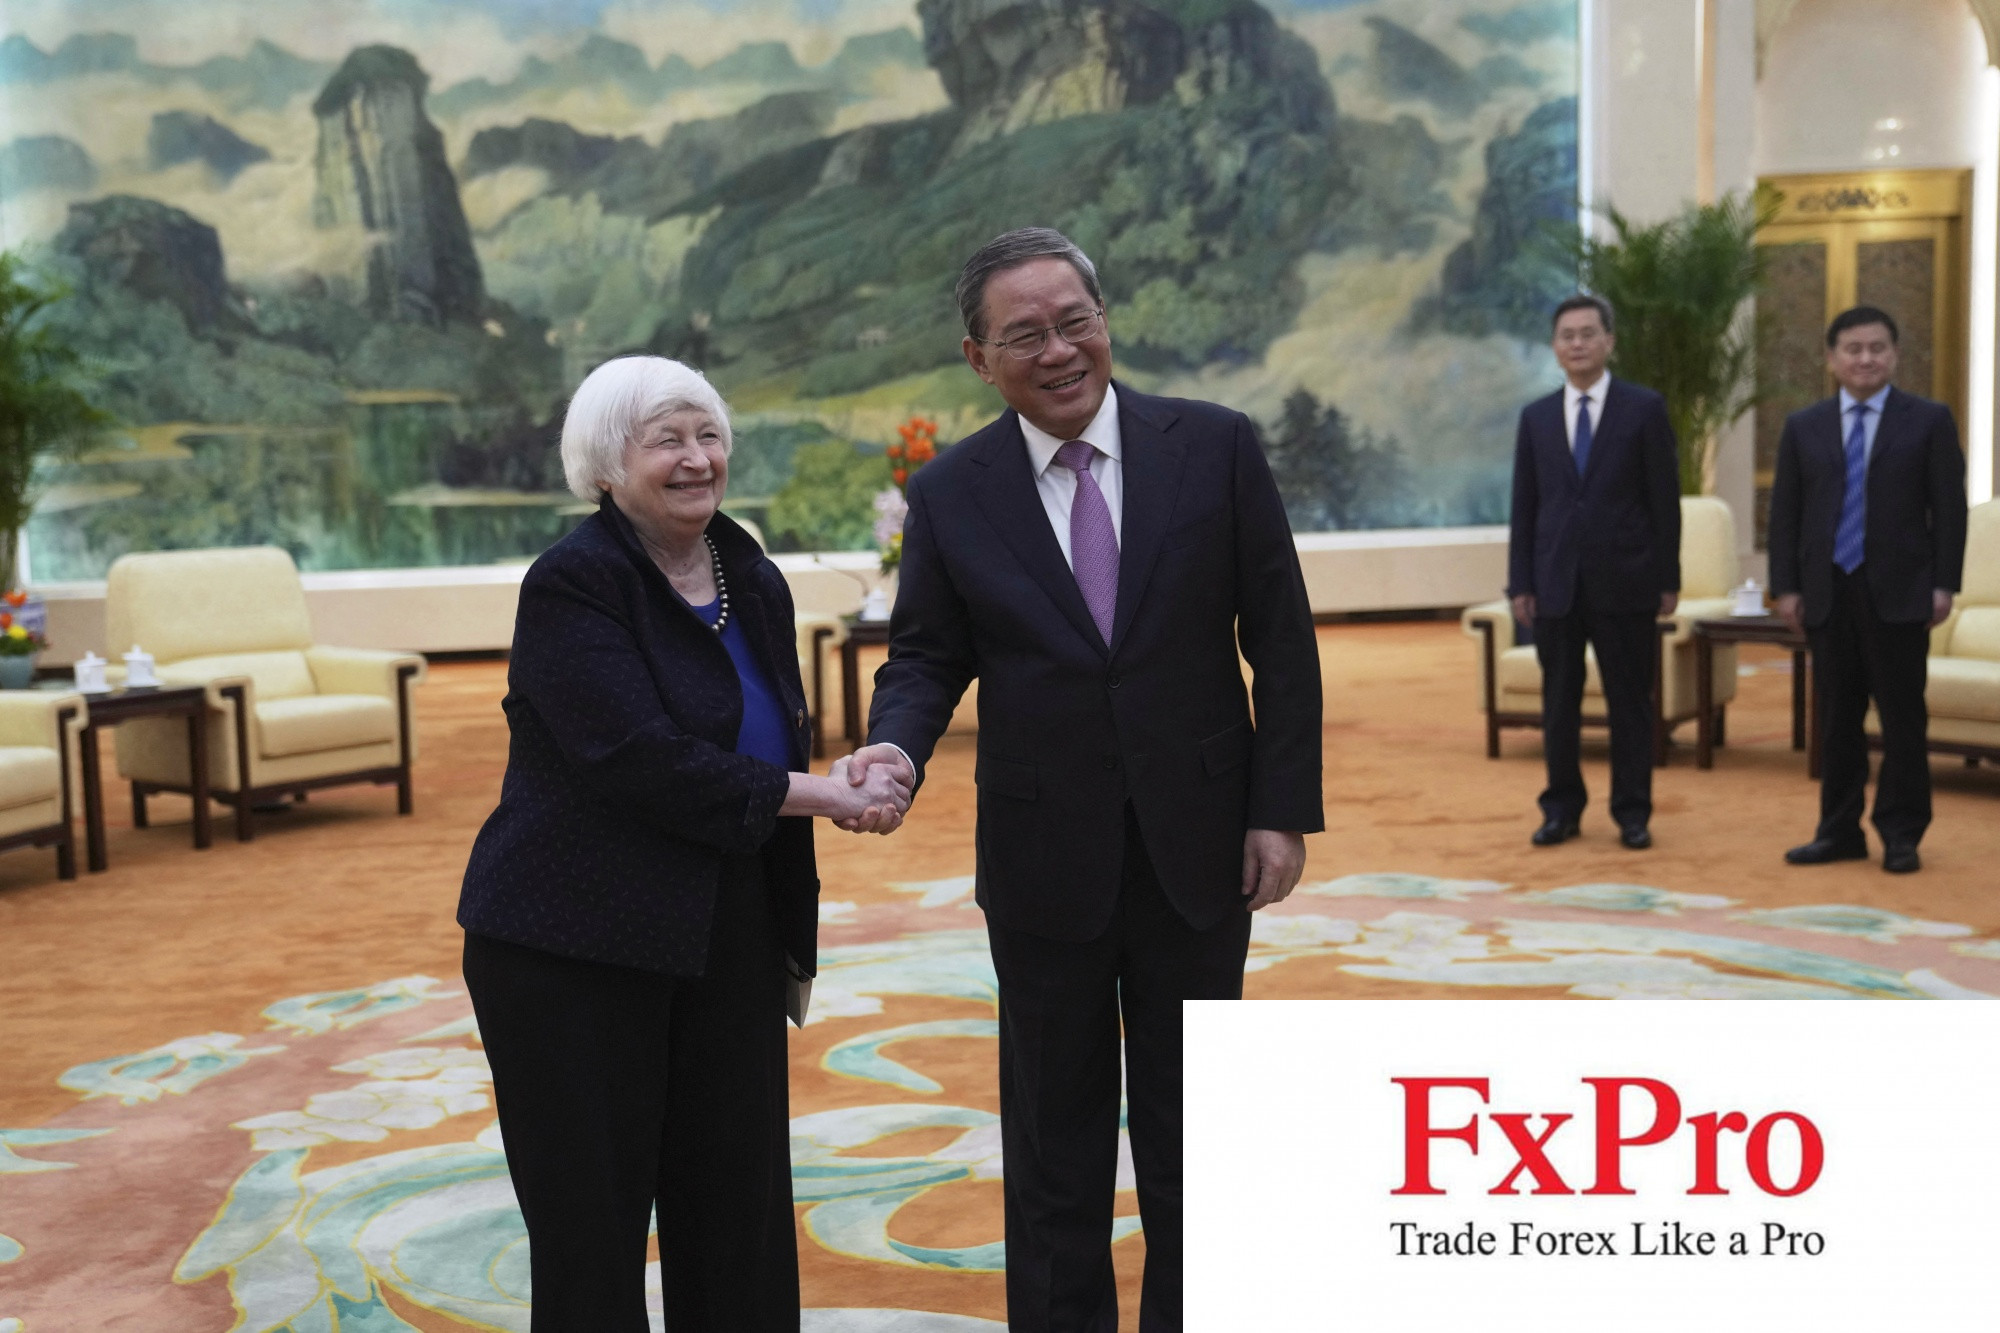 Bộ trưởng Tài chính Hoa Kỳ Yellen đưa ra những bình luận sắc bén tới các nhà lãnh đạo Trung Quốc